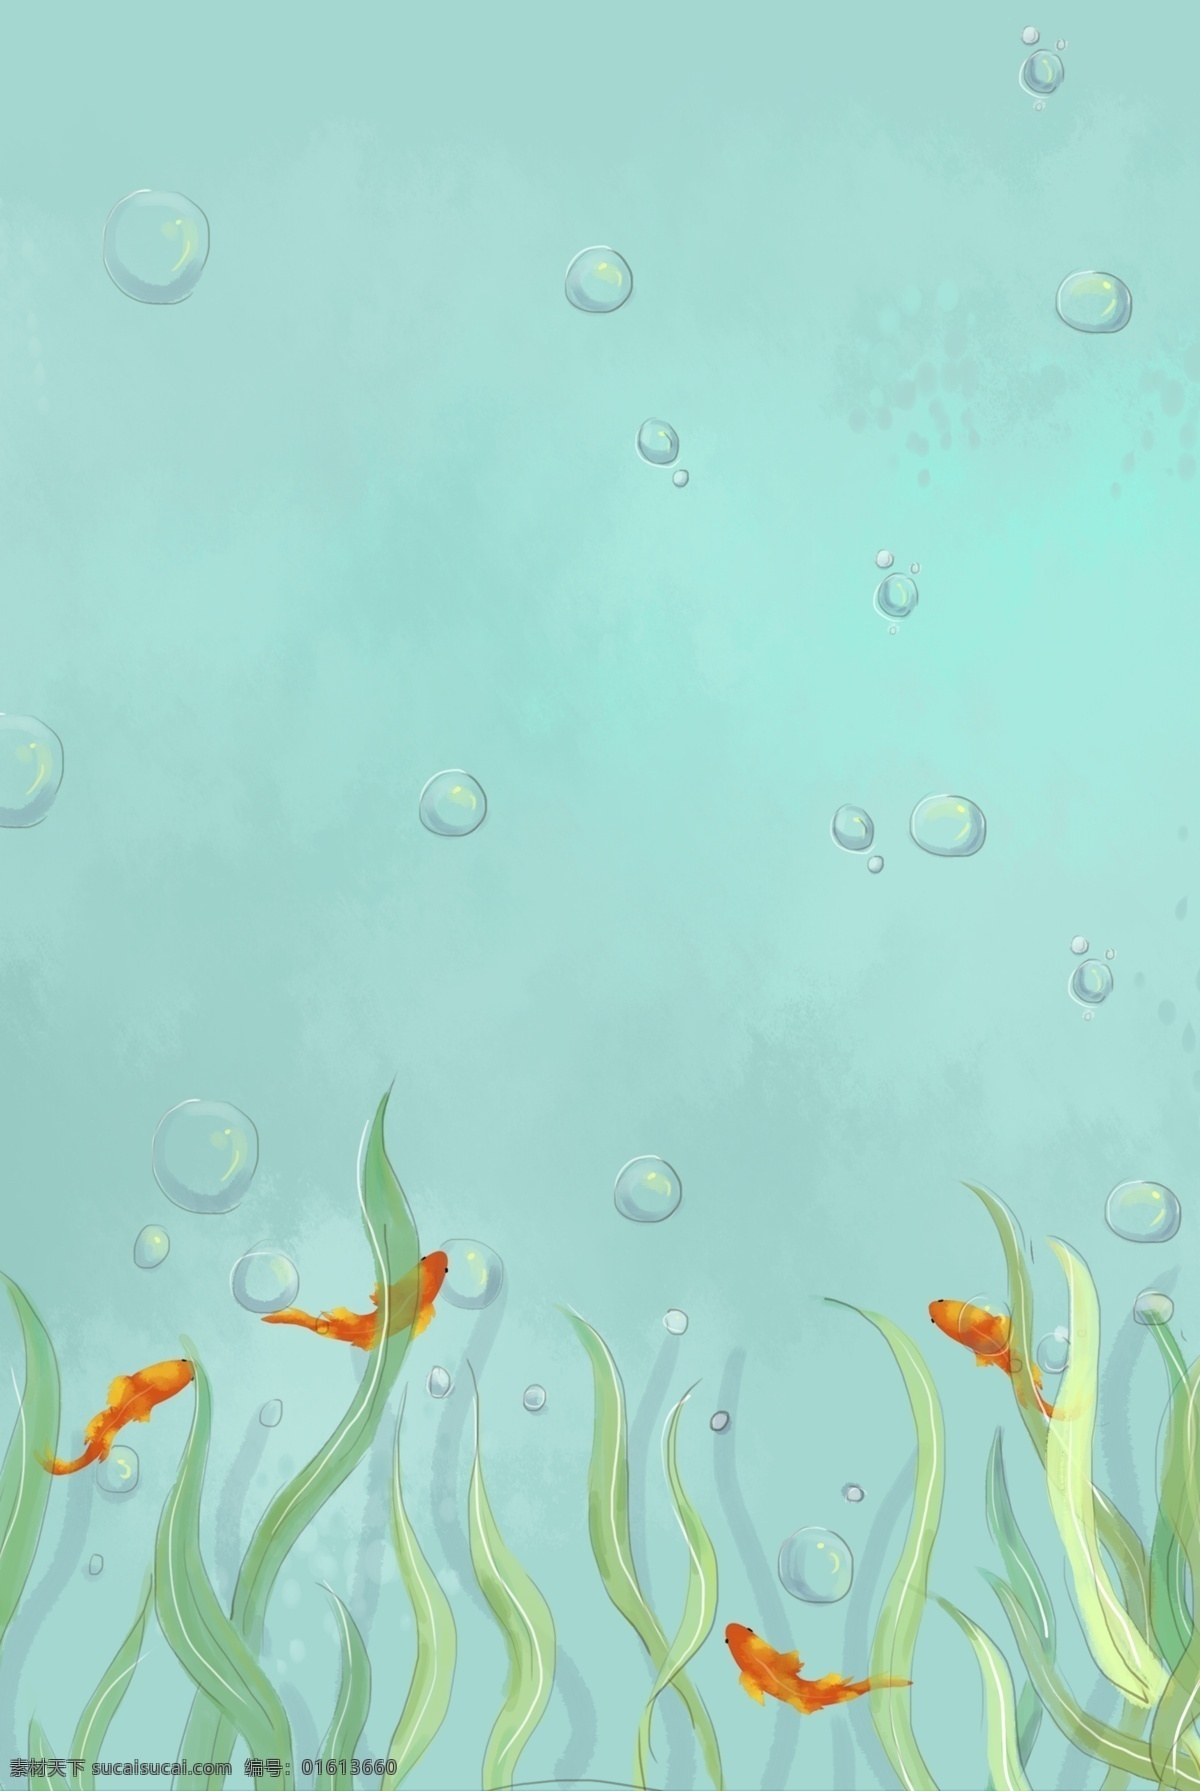 海洋世界 清新 蓝色 分层 banner 卡通 手绘 夏天 海底 鱼 海草 气泡 创意合成